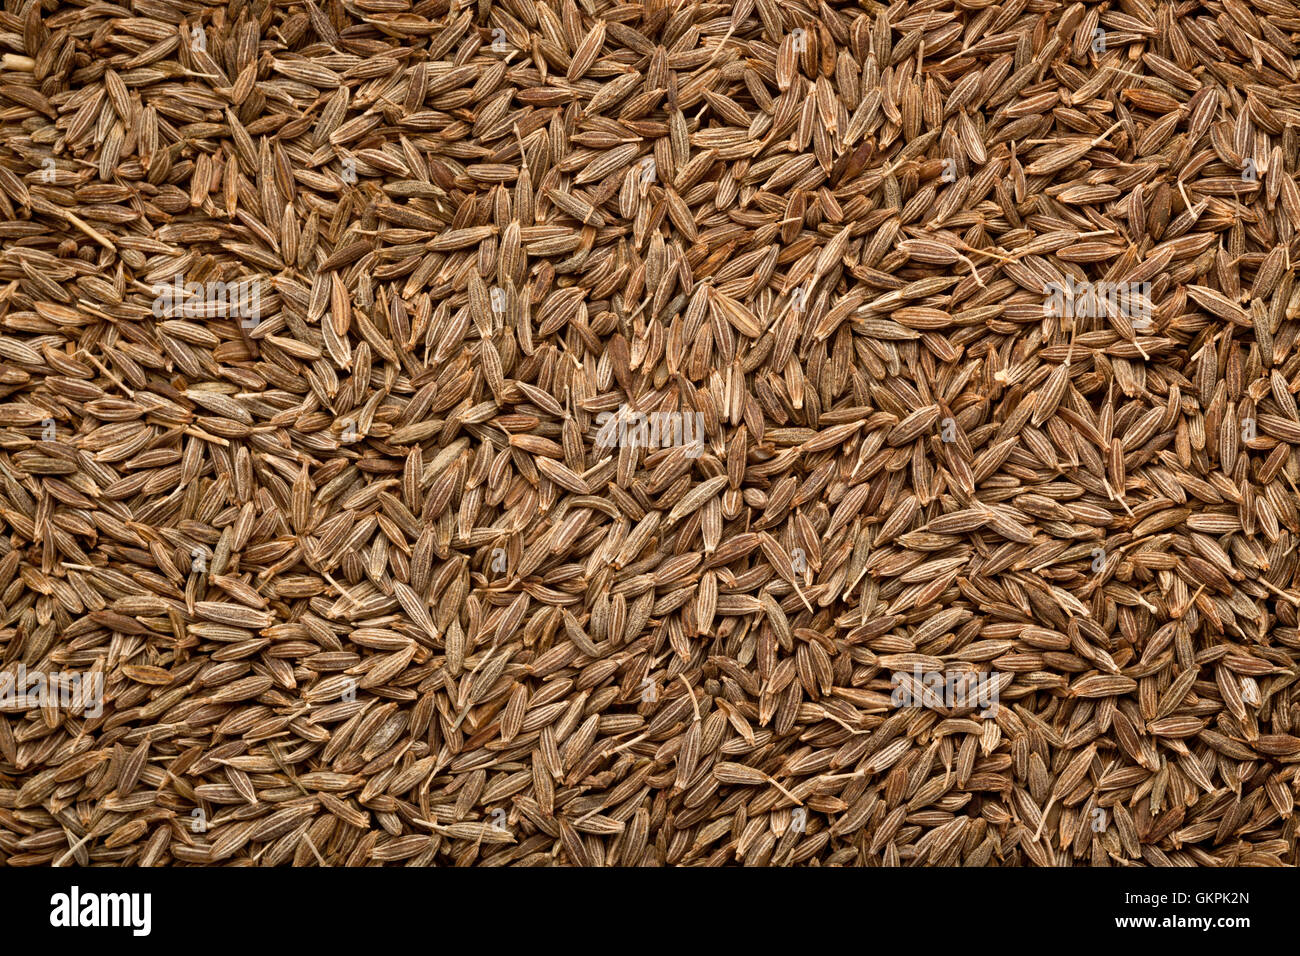 Closeup of a lot of cumin seeds Stock Photo